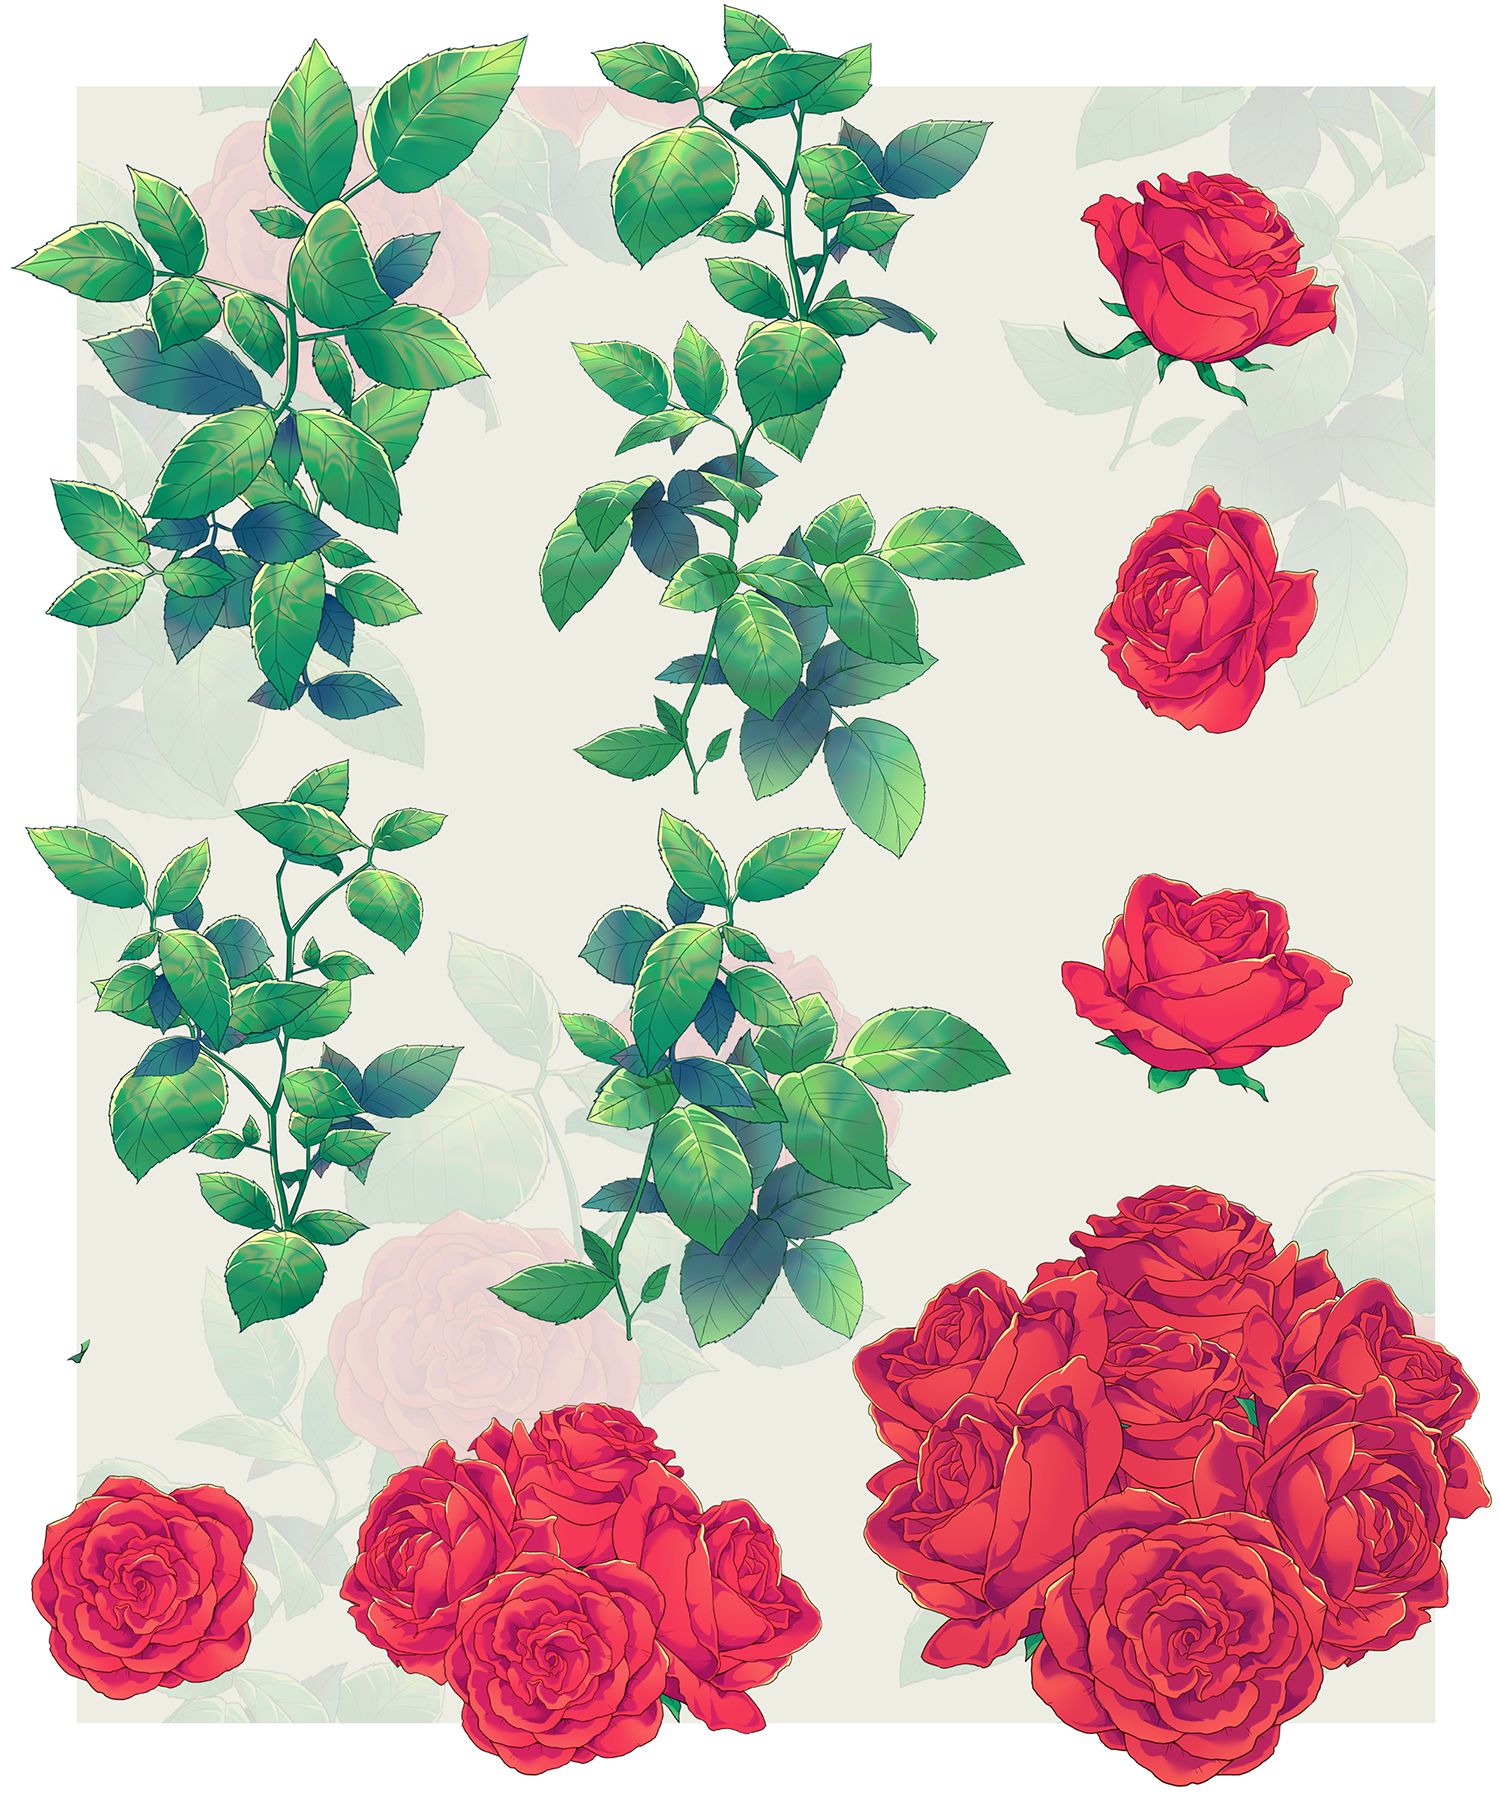 壁纸 : 动漫女孩, 白色礼服, 原始人物, 玫瑰, 色带, 服装, 花卉 2000x1428 - microcosmos - 71118 ...